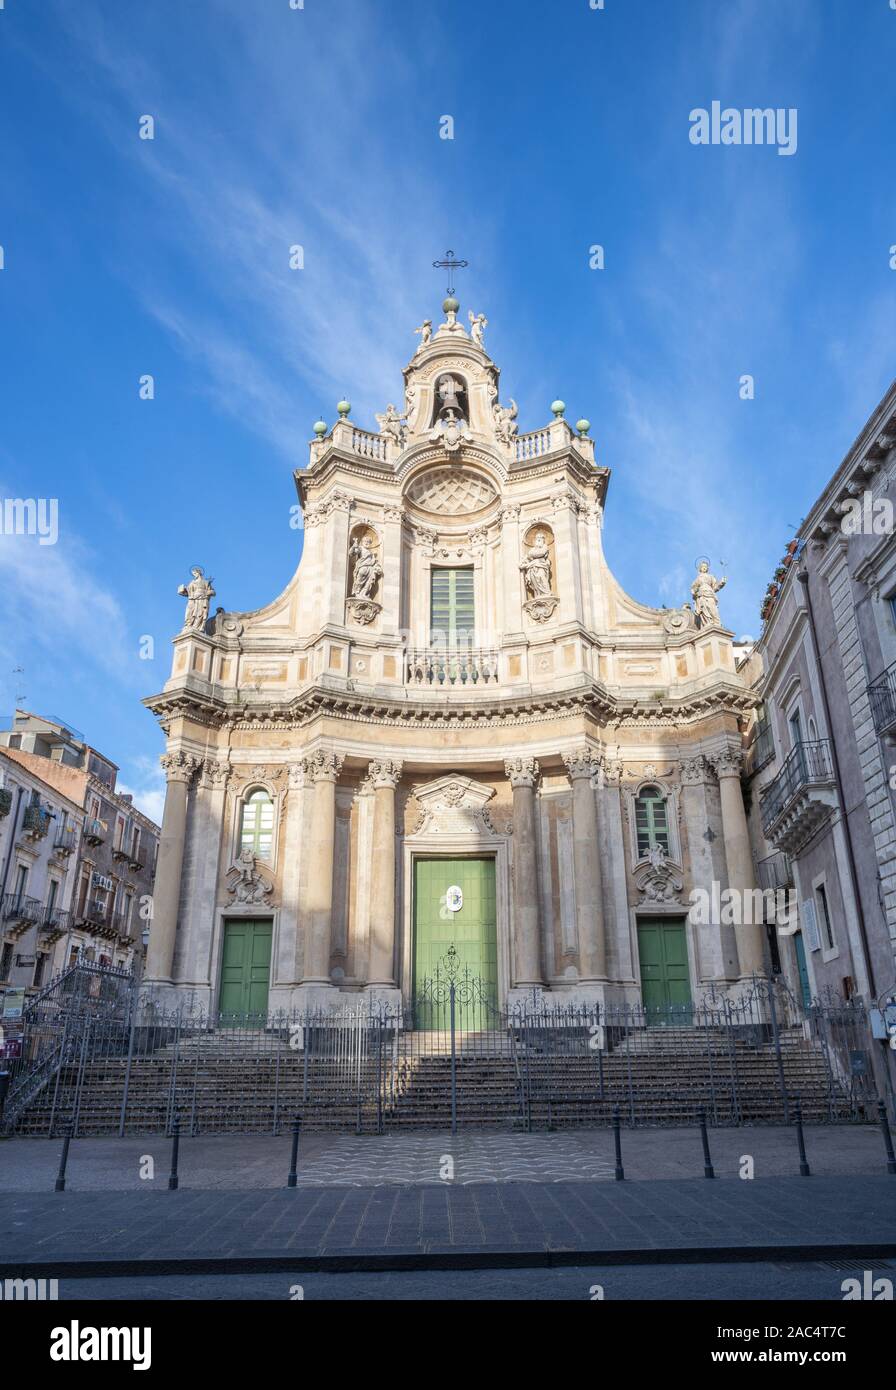 CATANIA, ITALY - APRIL 7, 2018: The baroque facade of church Basilica Collegiata. Stock Photo